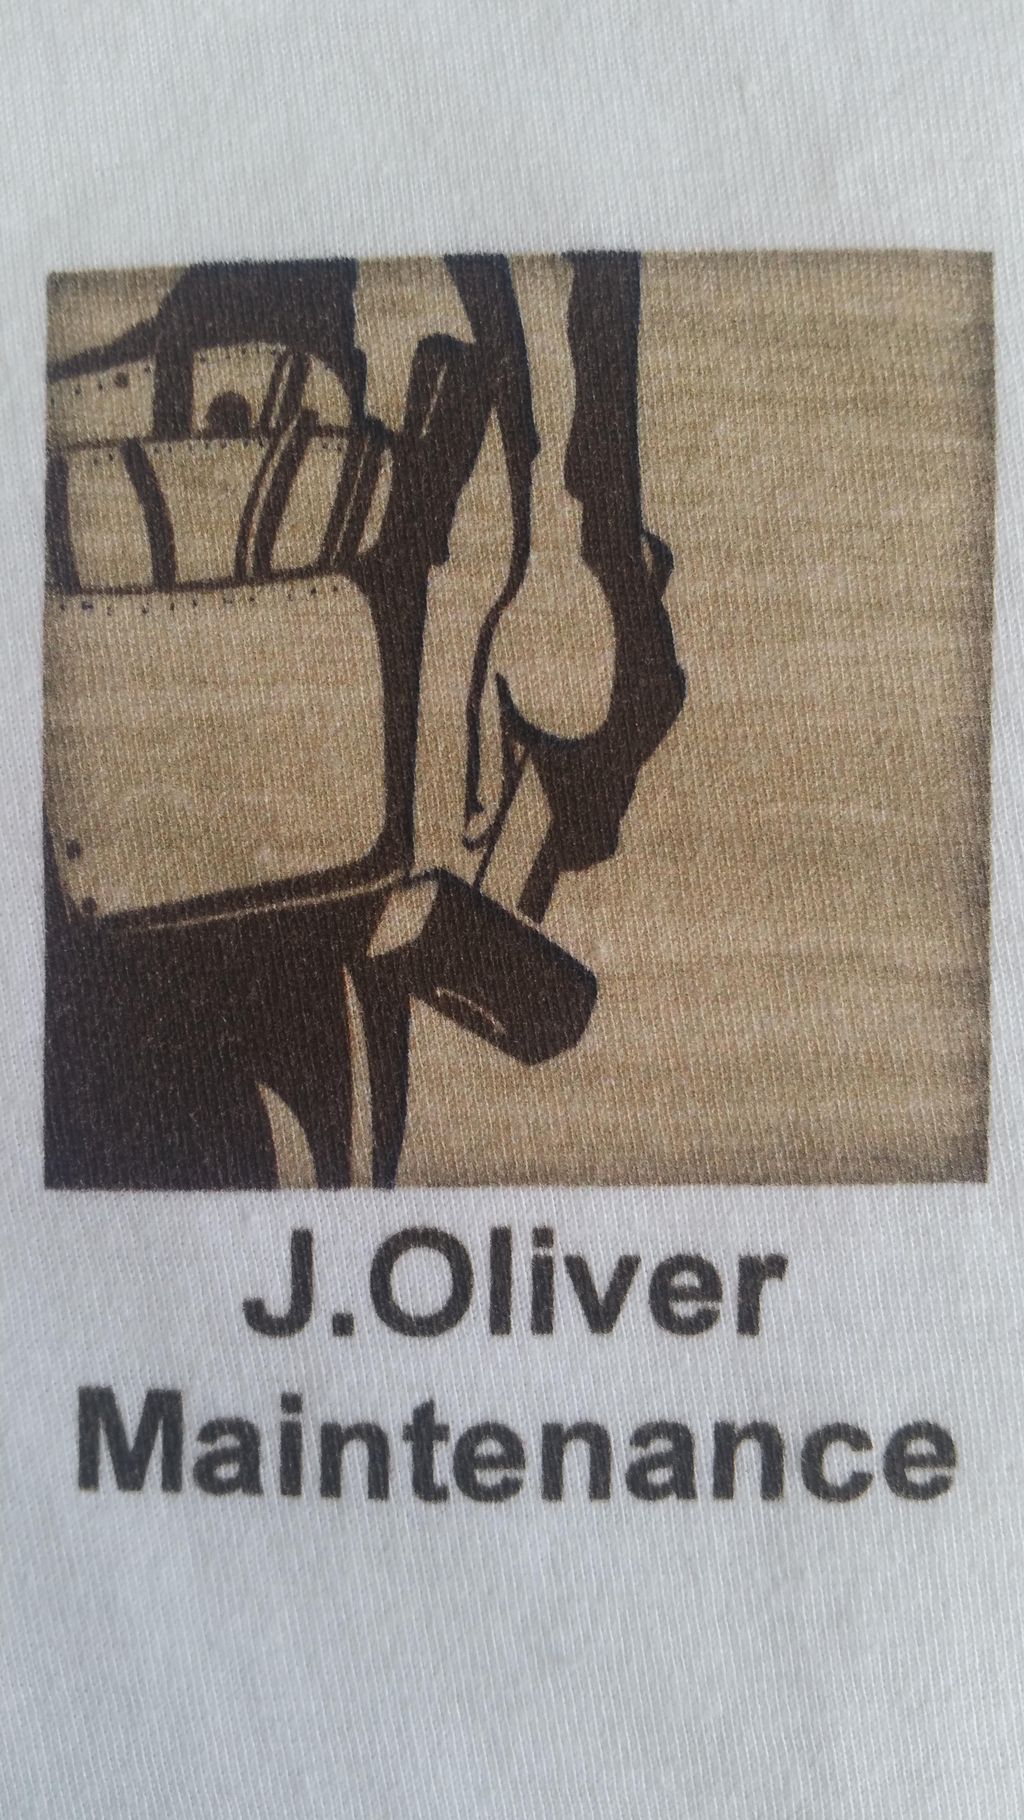 J. Oliver Maintenence